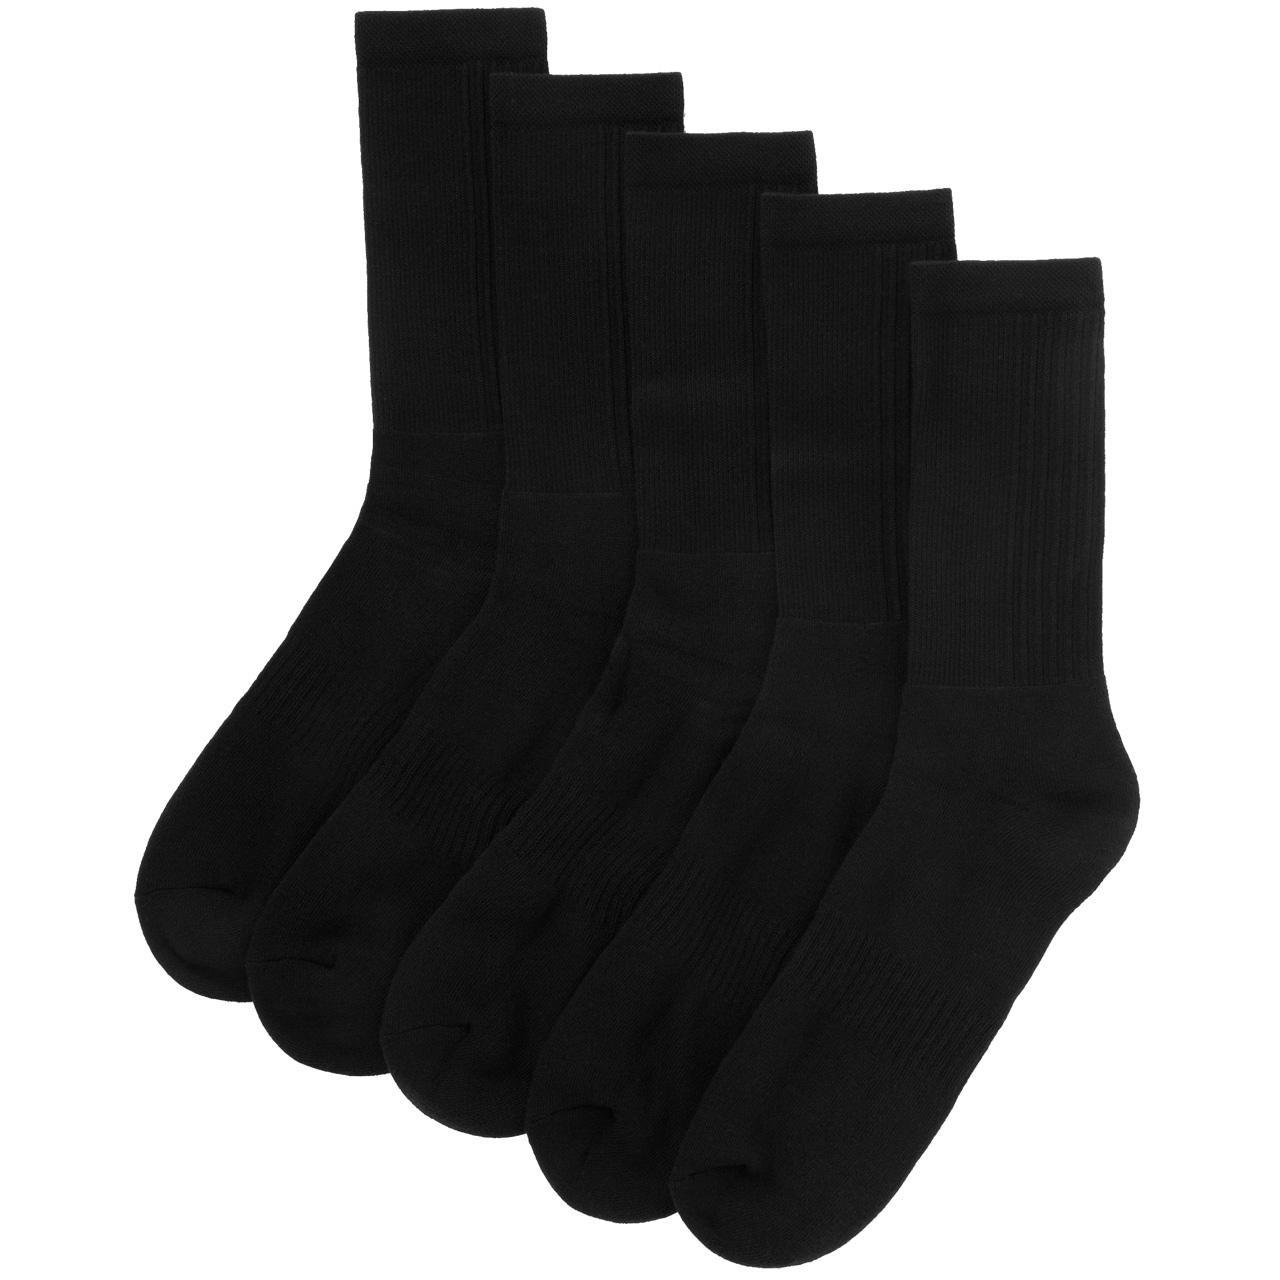 Buy Marvel Avengers Black Ankle Socks 5 Pack - 9-12, Multipacks